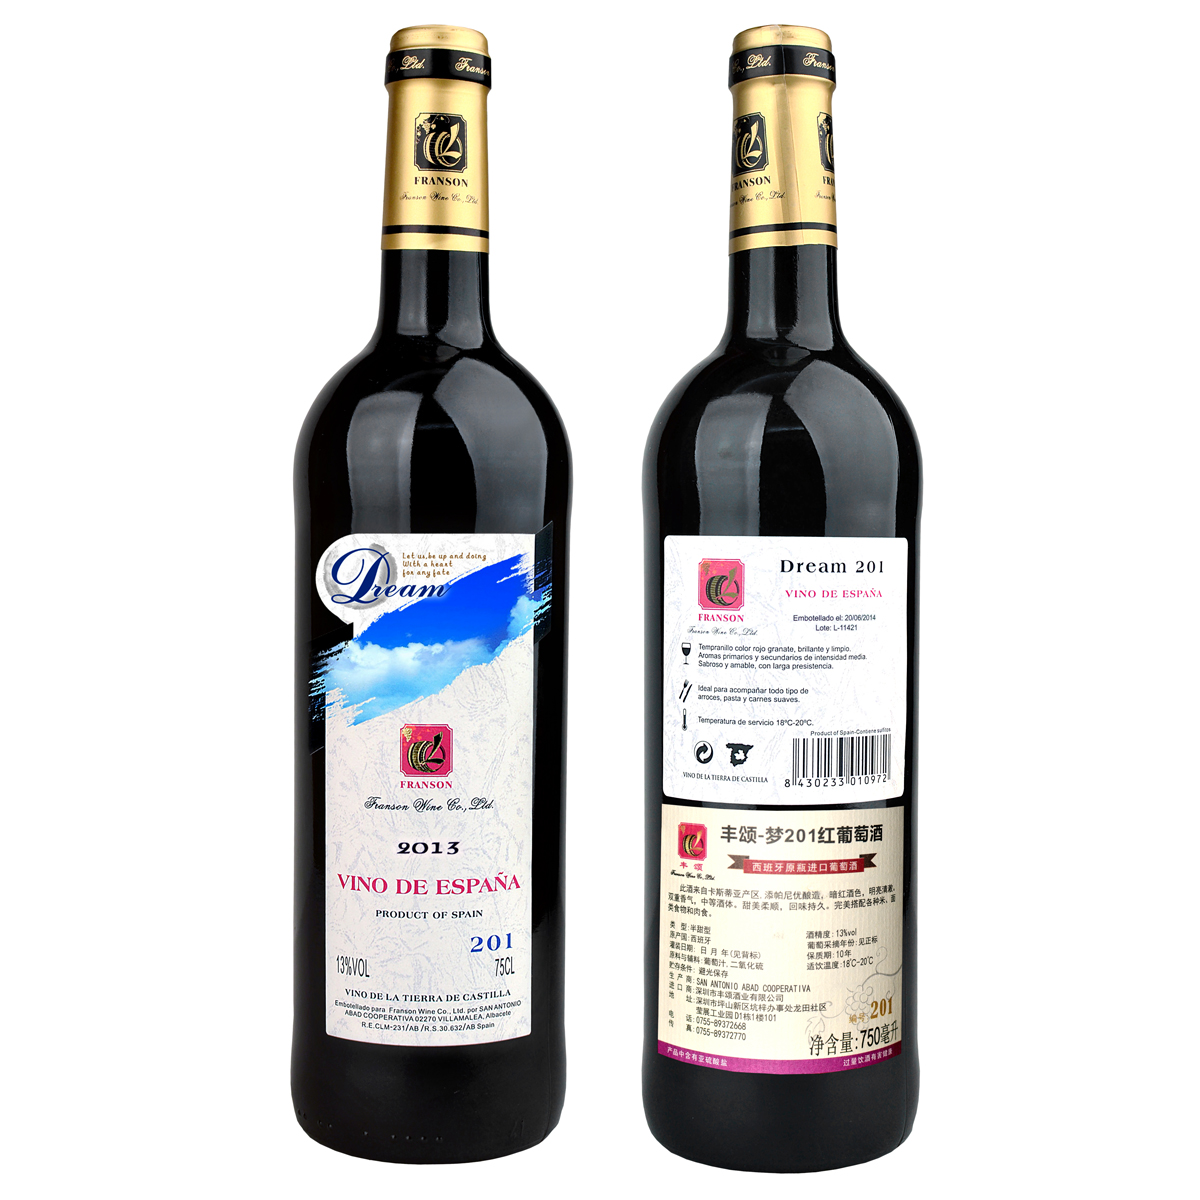 西班牙卡斯蒂亚SAN ANTONIO ABAD梦系列添帕尼优201VDLT半甜红葡萄酒